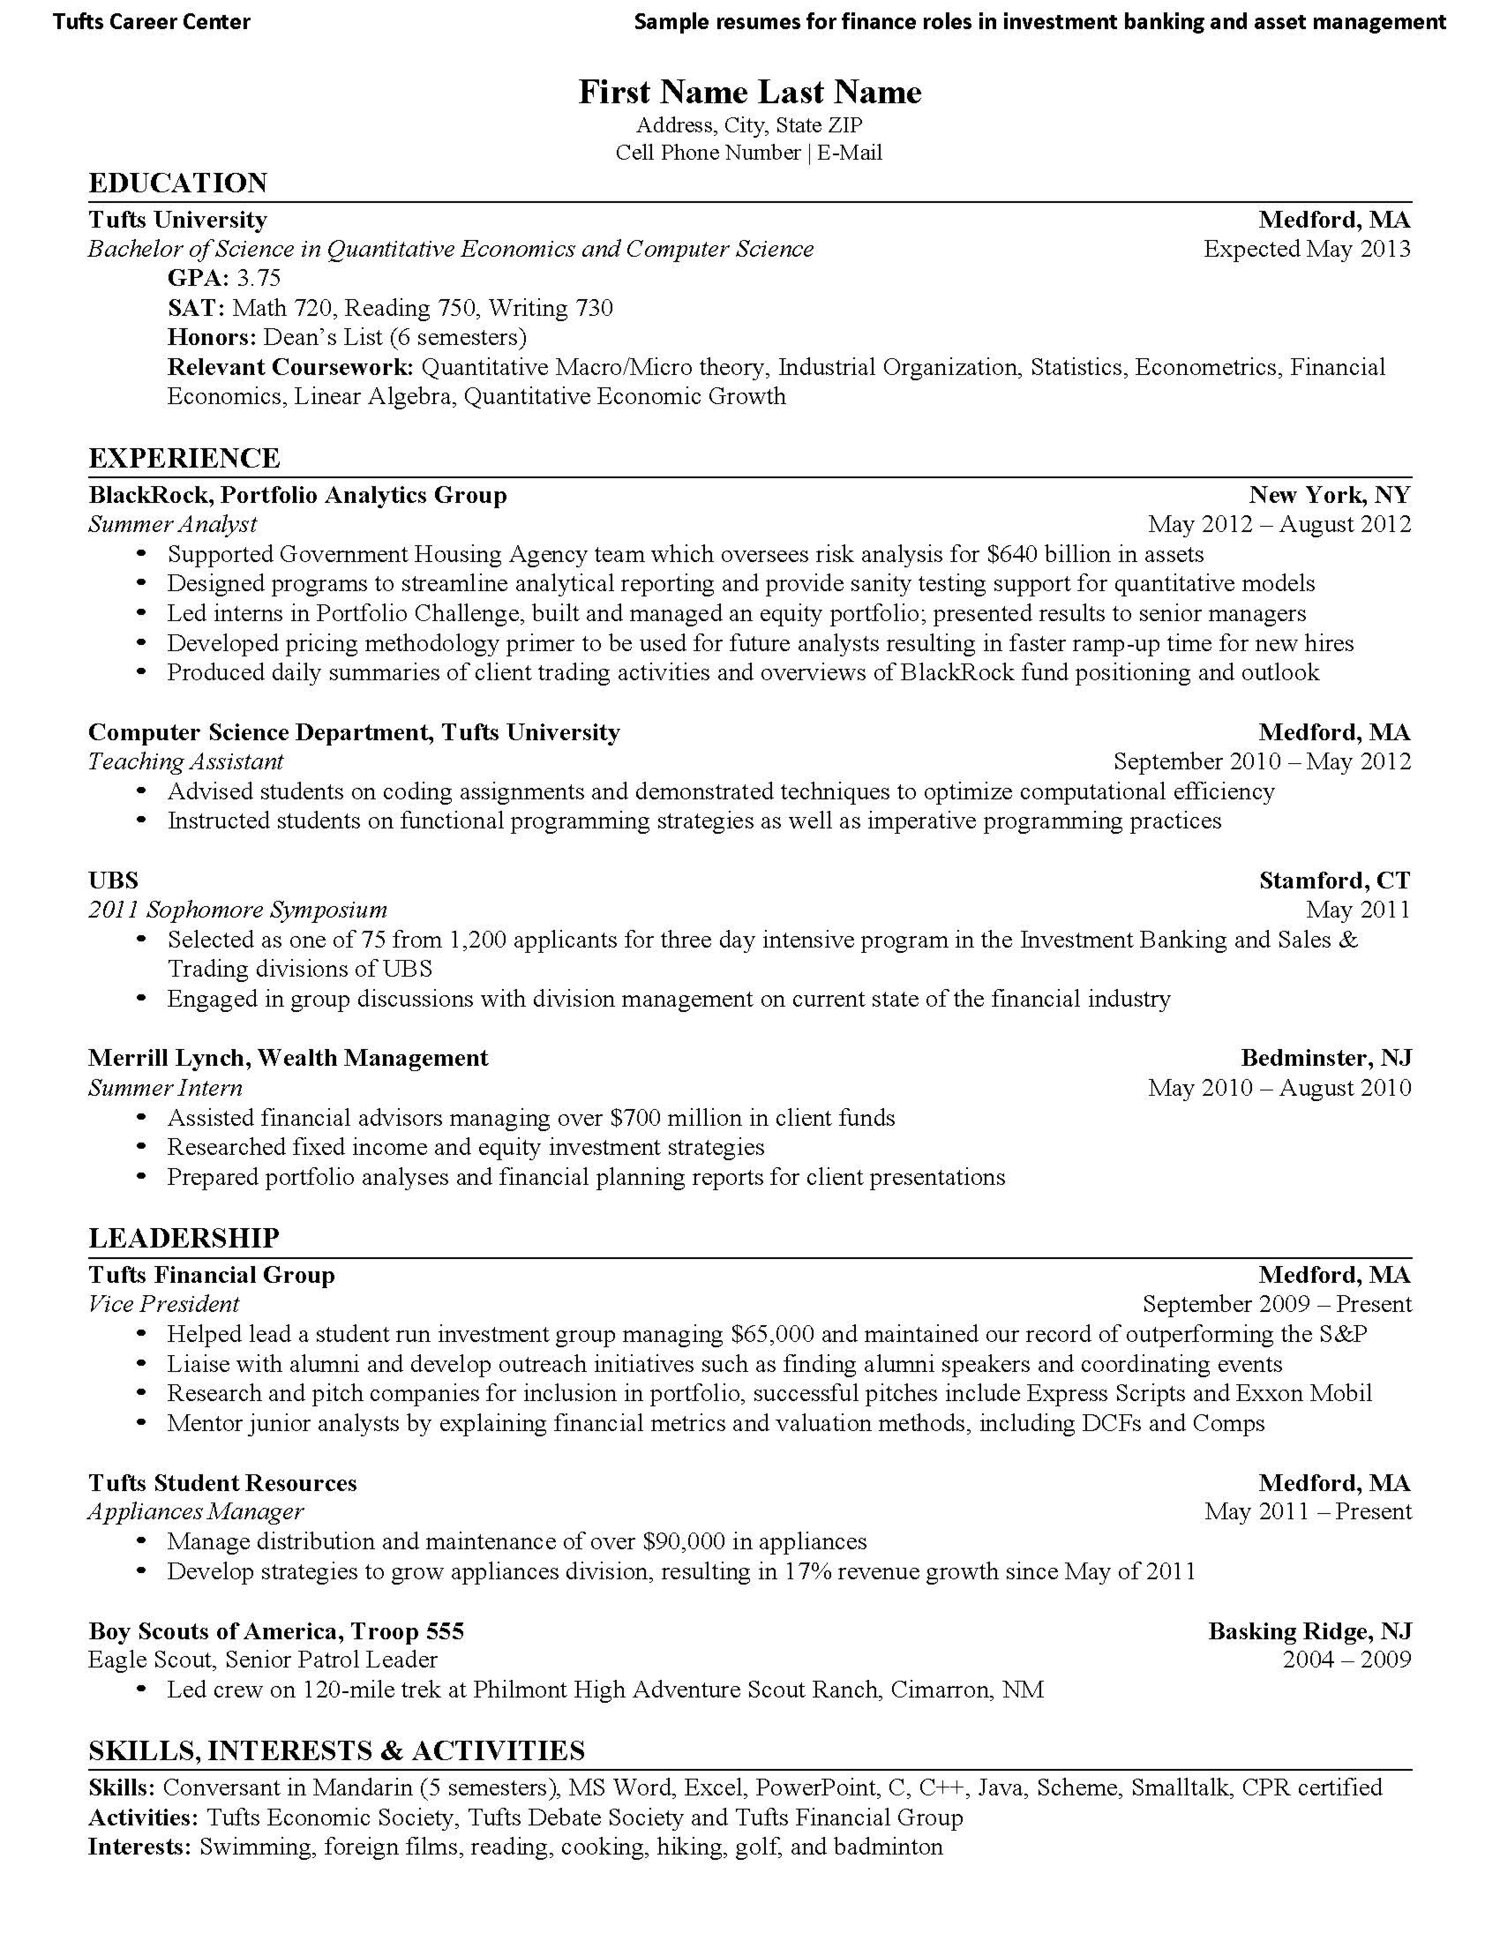 Sample Resume for Senior Pattol Leader Resume â Sample â Texas Deca